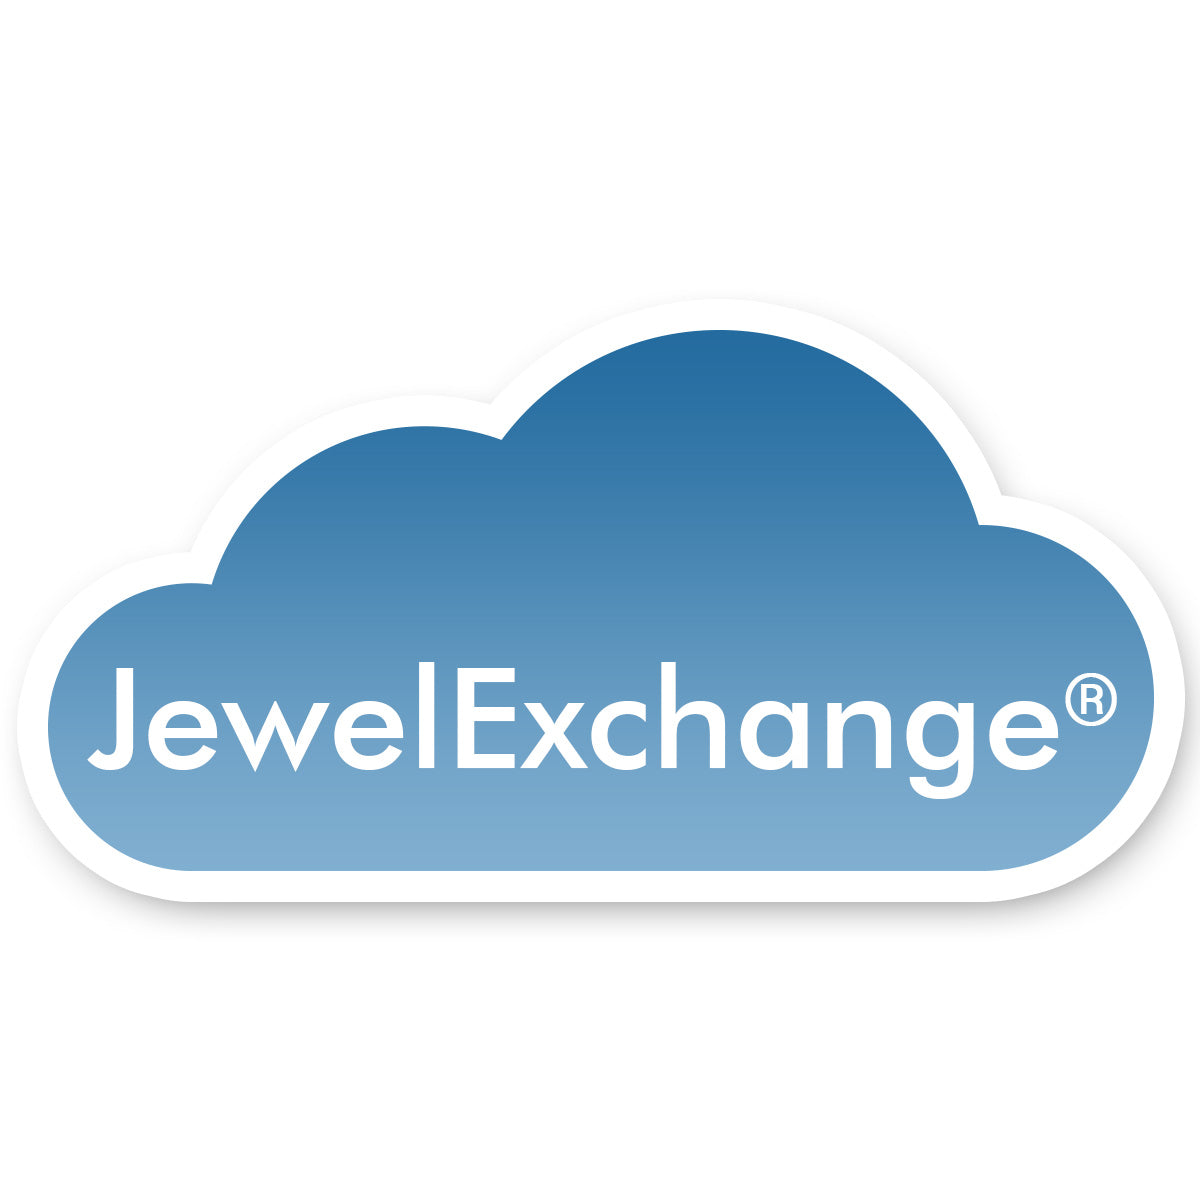 JewelExchange Product Feed API